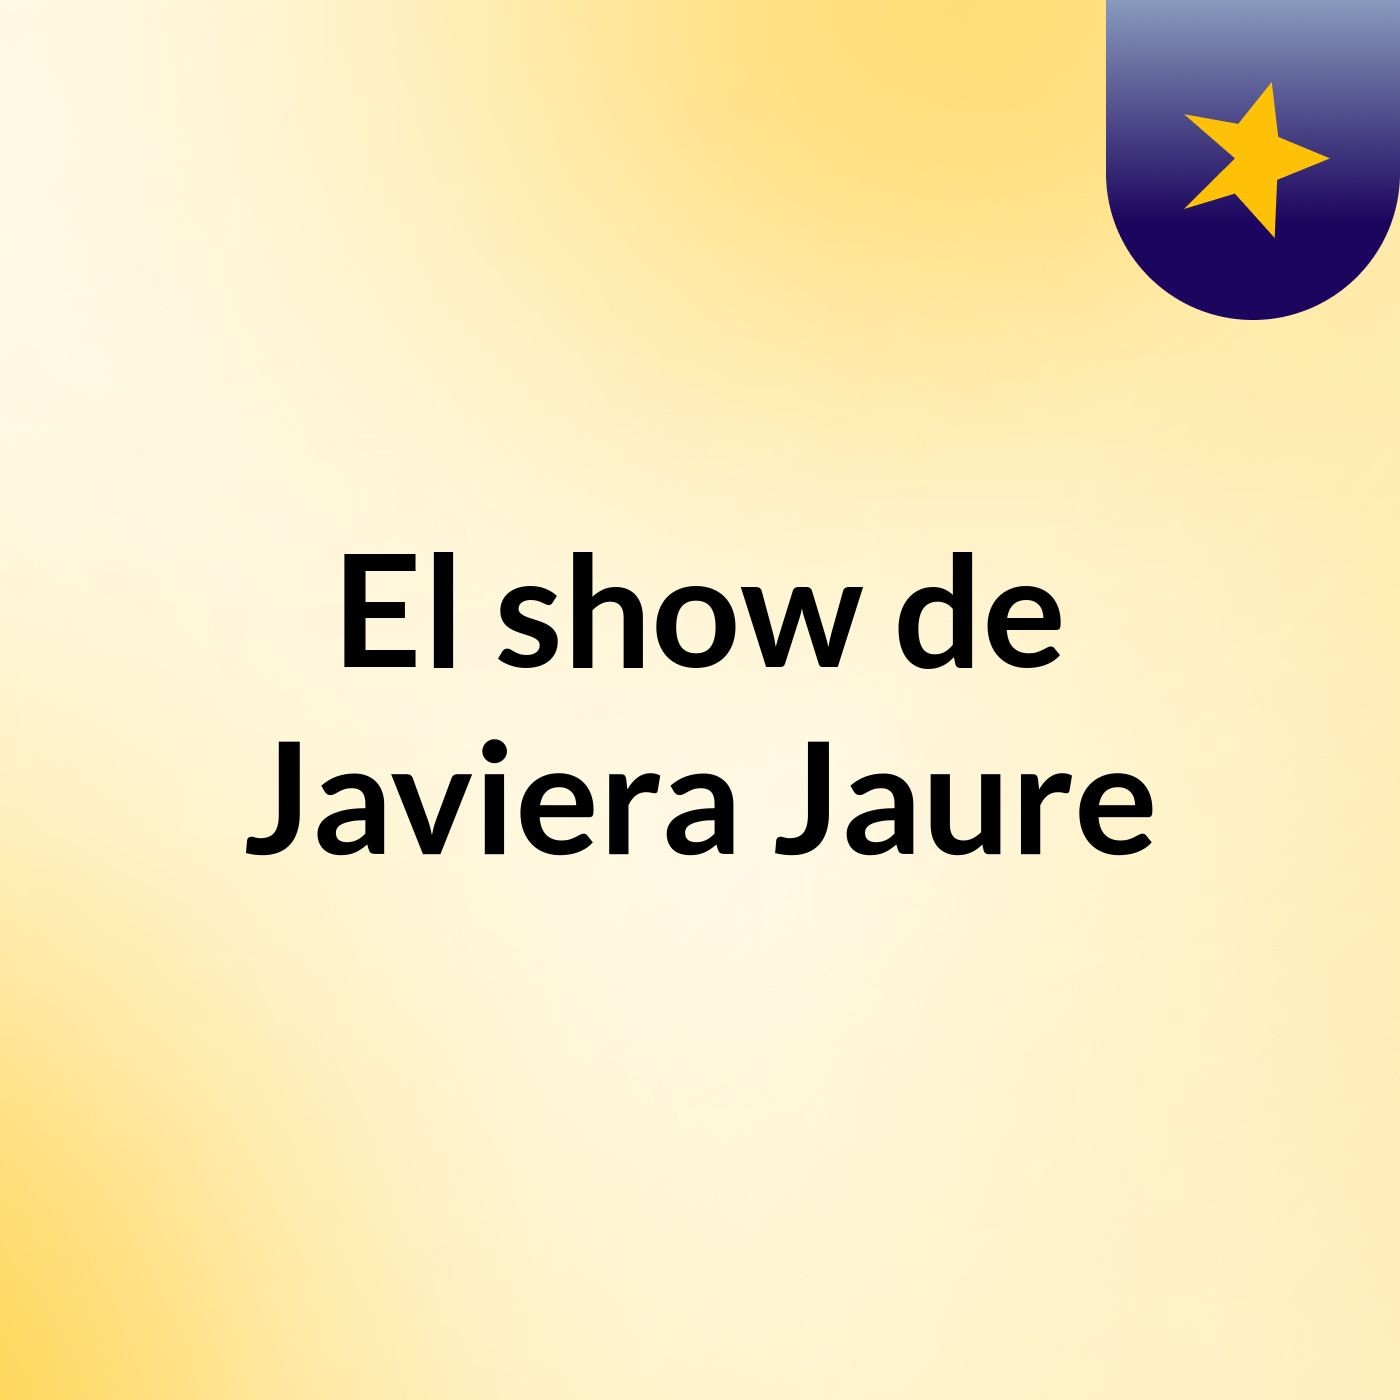 El show de Javiera Jaure